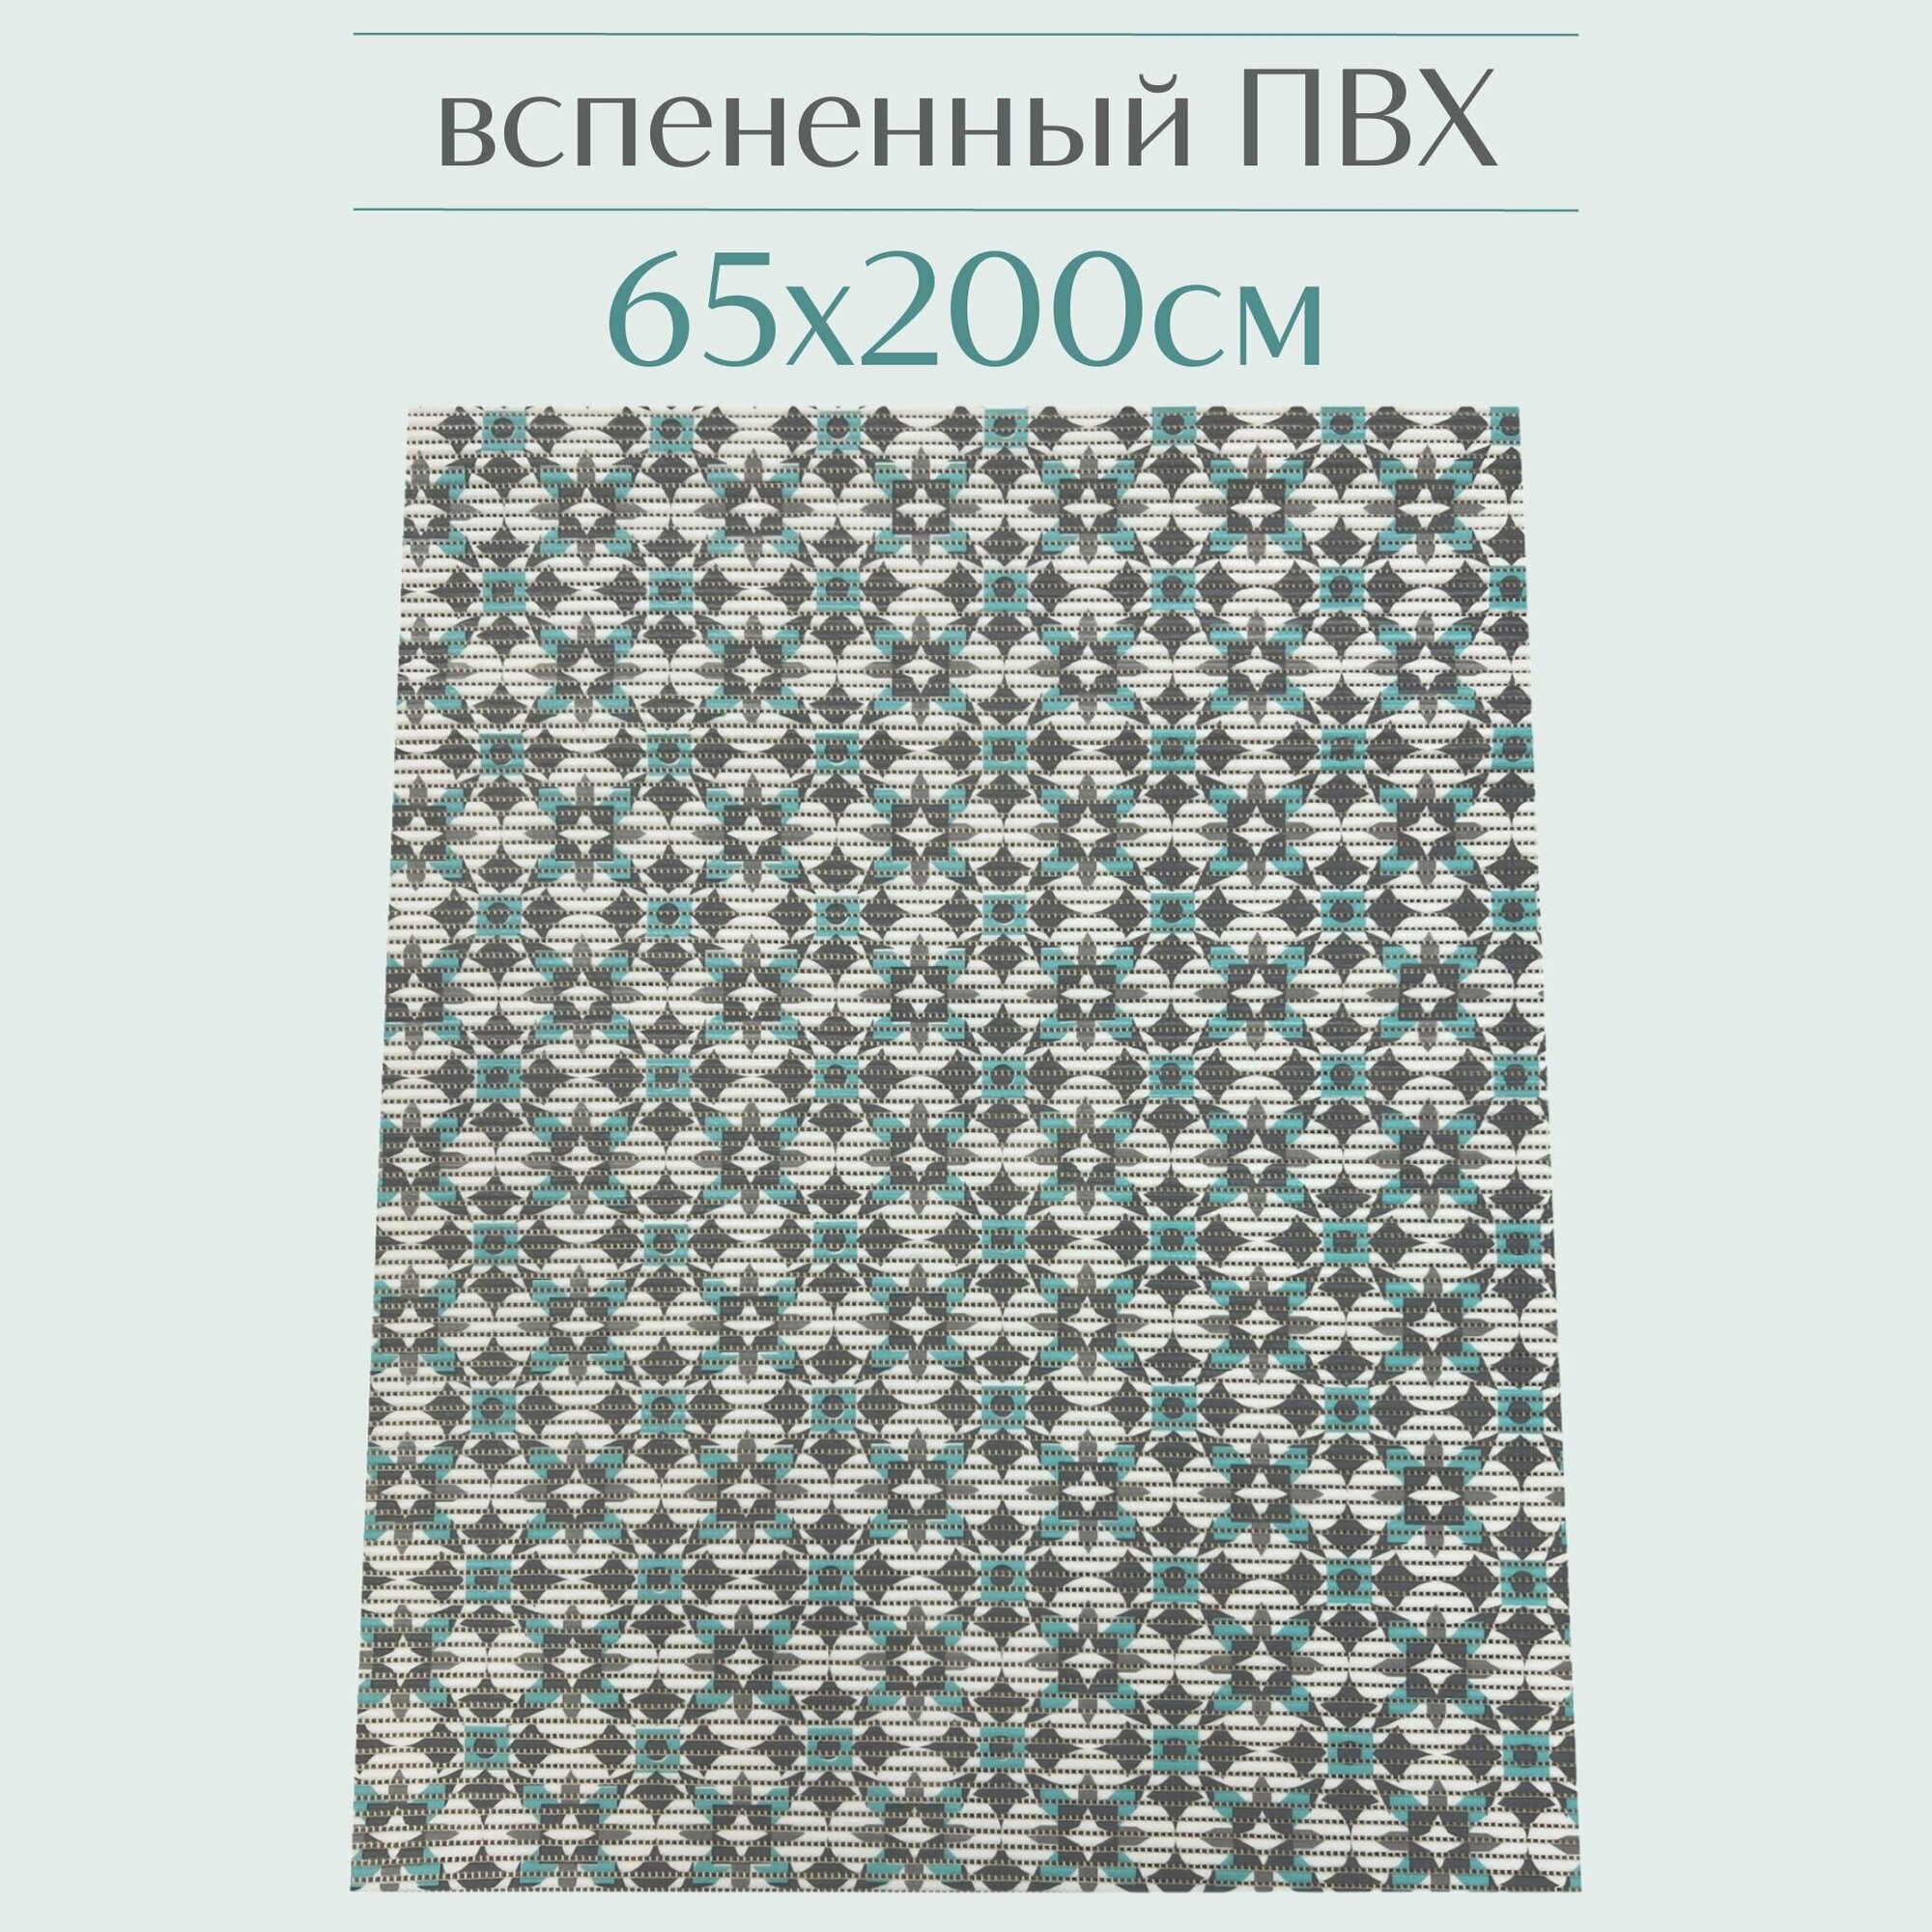 Напольный коврик для ванной из вспененного ПВХ 65x200 см голубой/серый/белый с рисунком